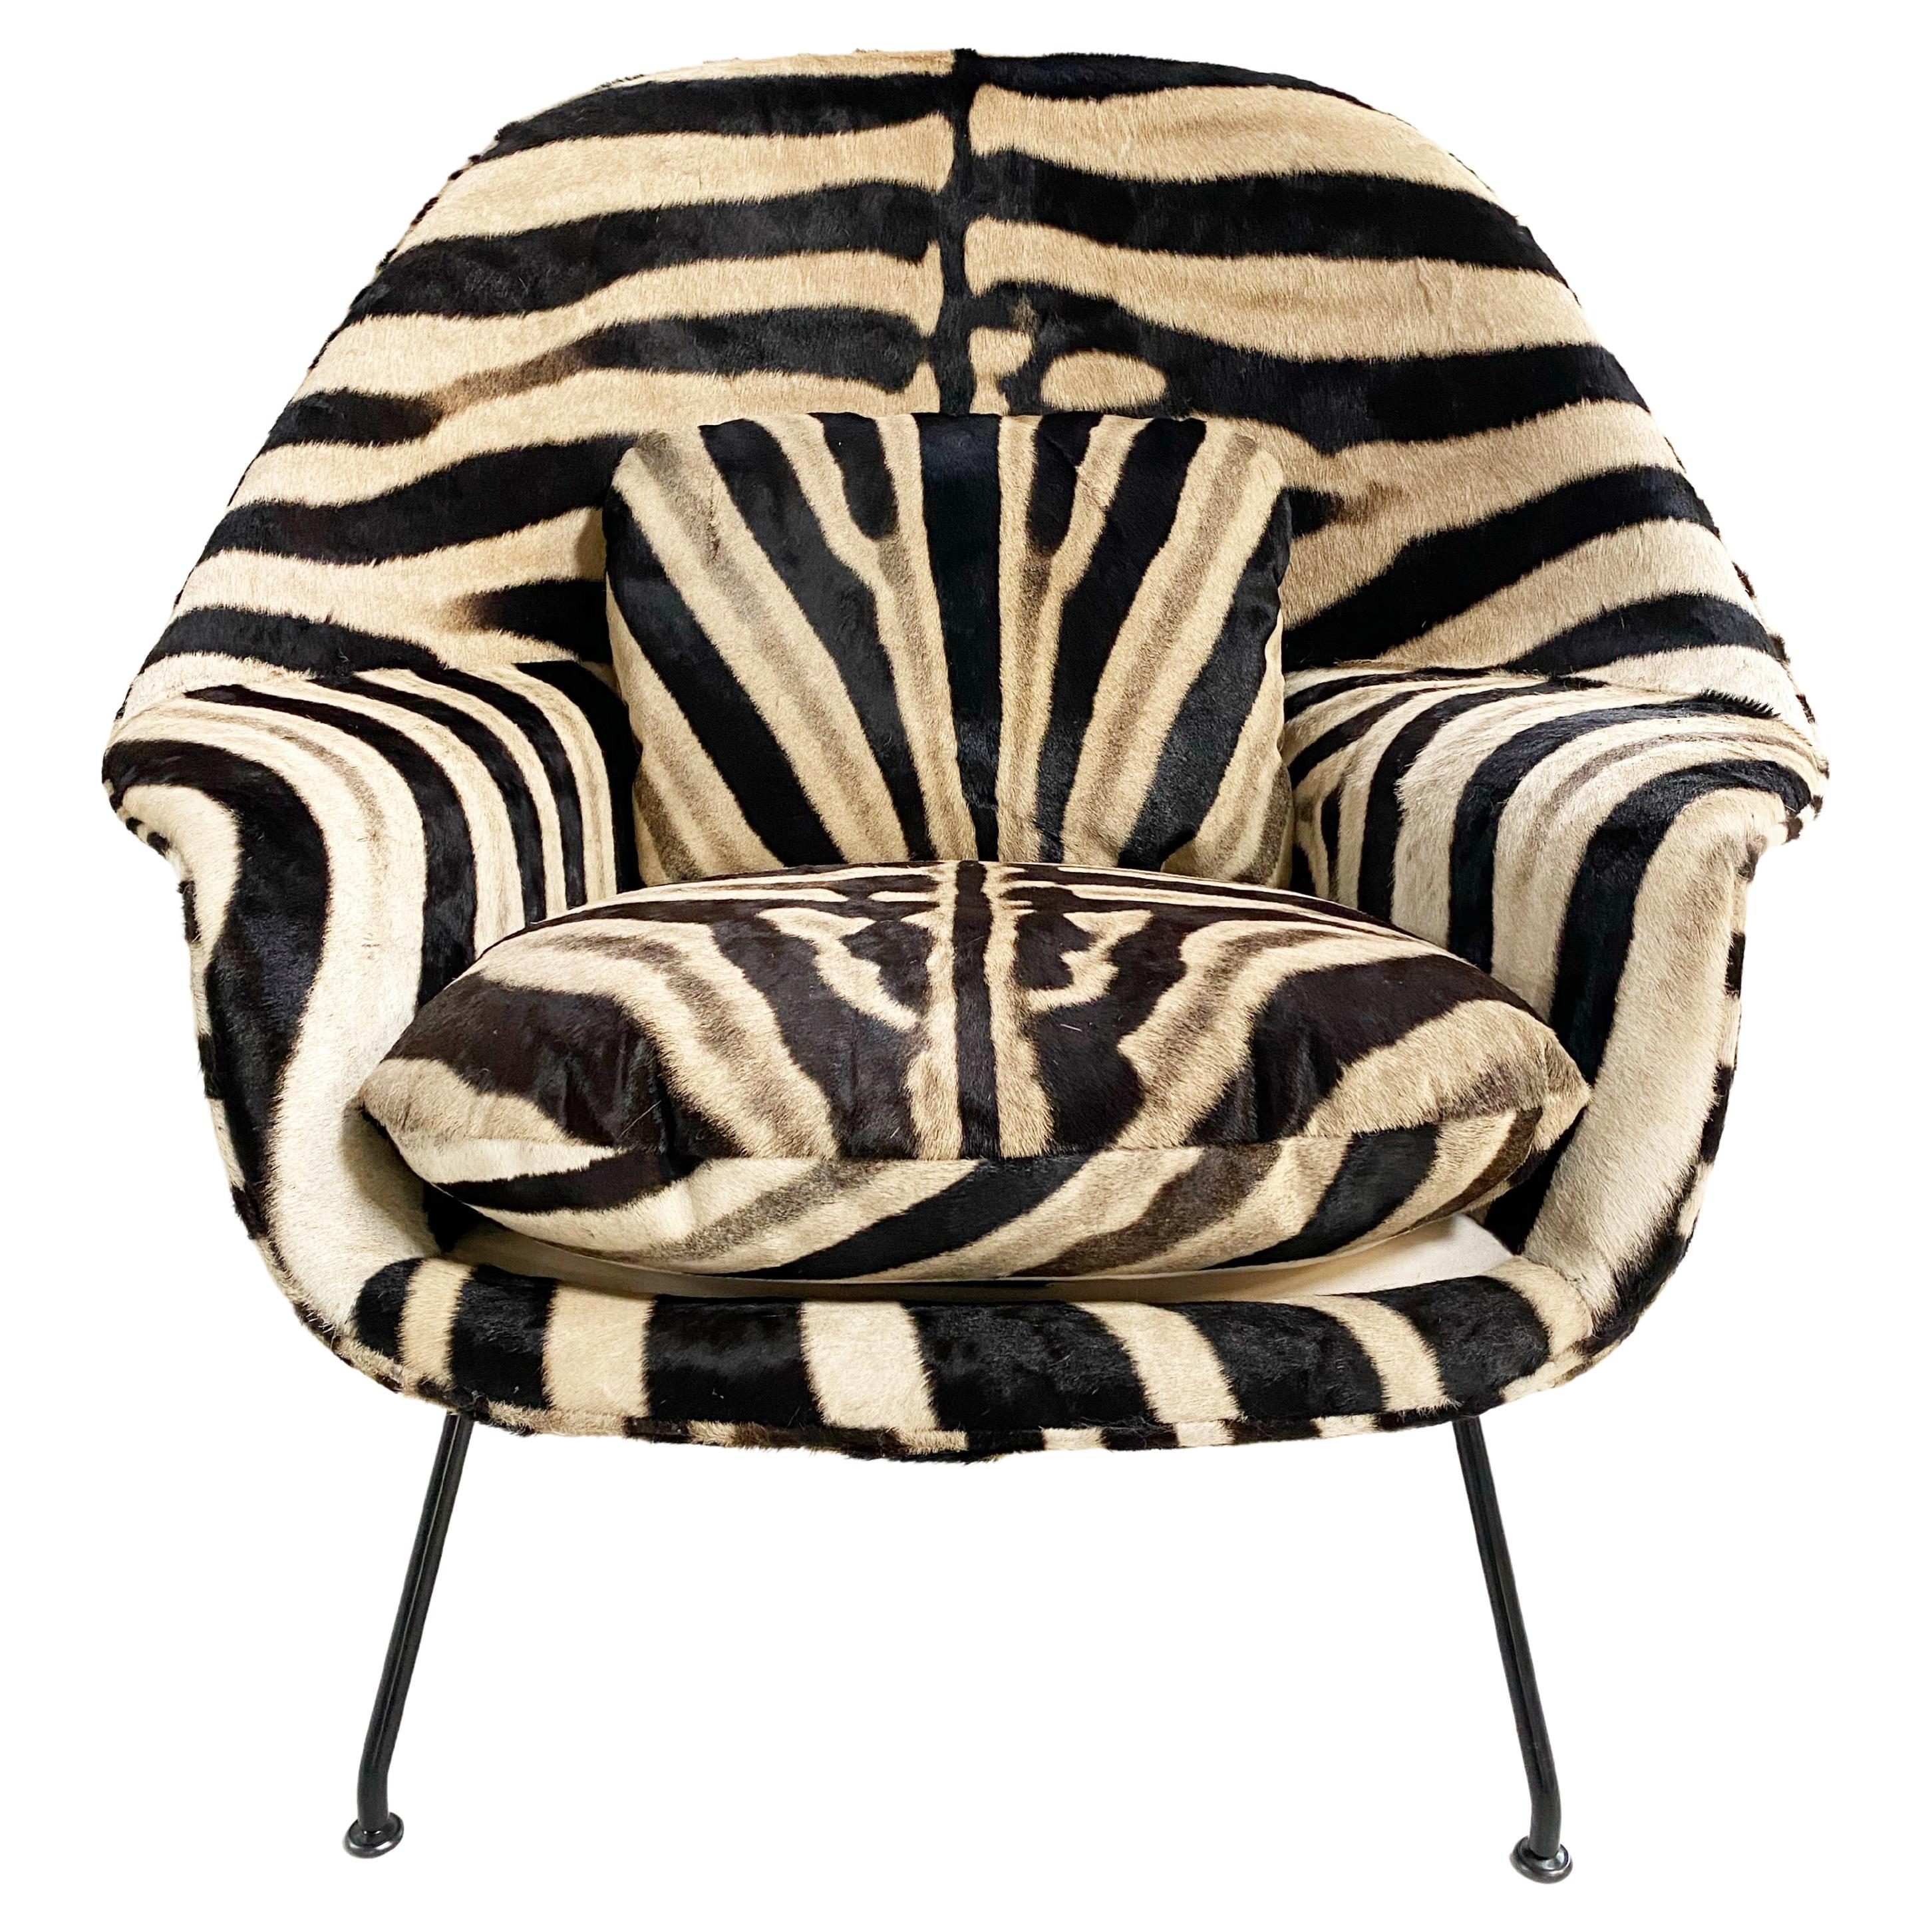 Forsyth Bespoke Eero Saarinen Womb Chair in Zebra